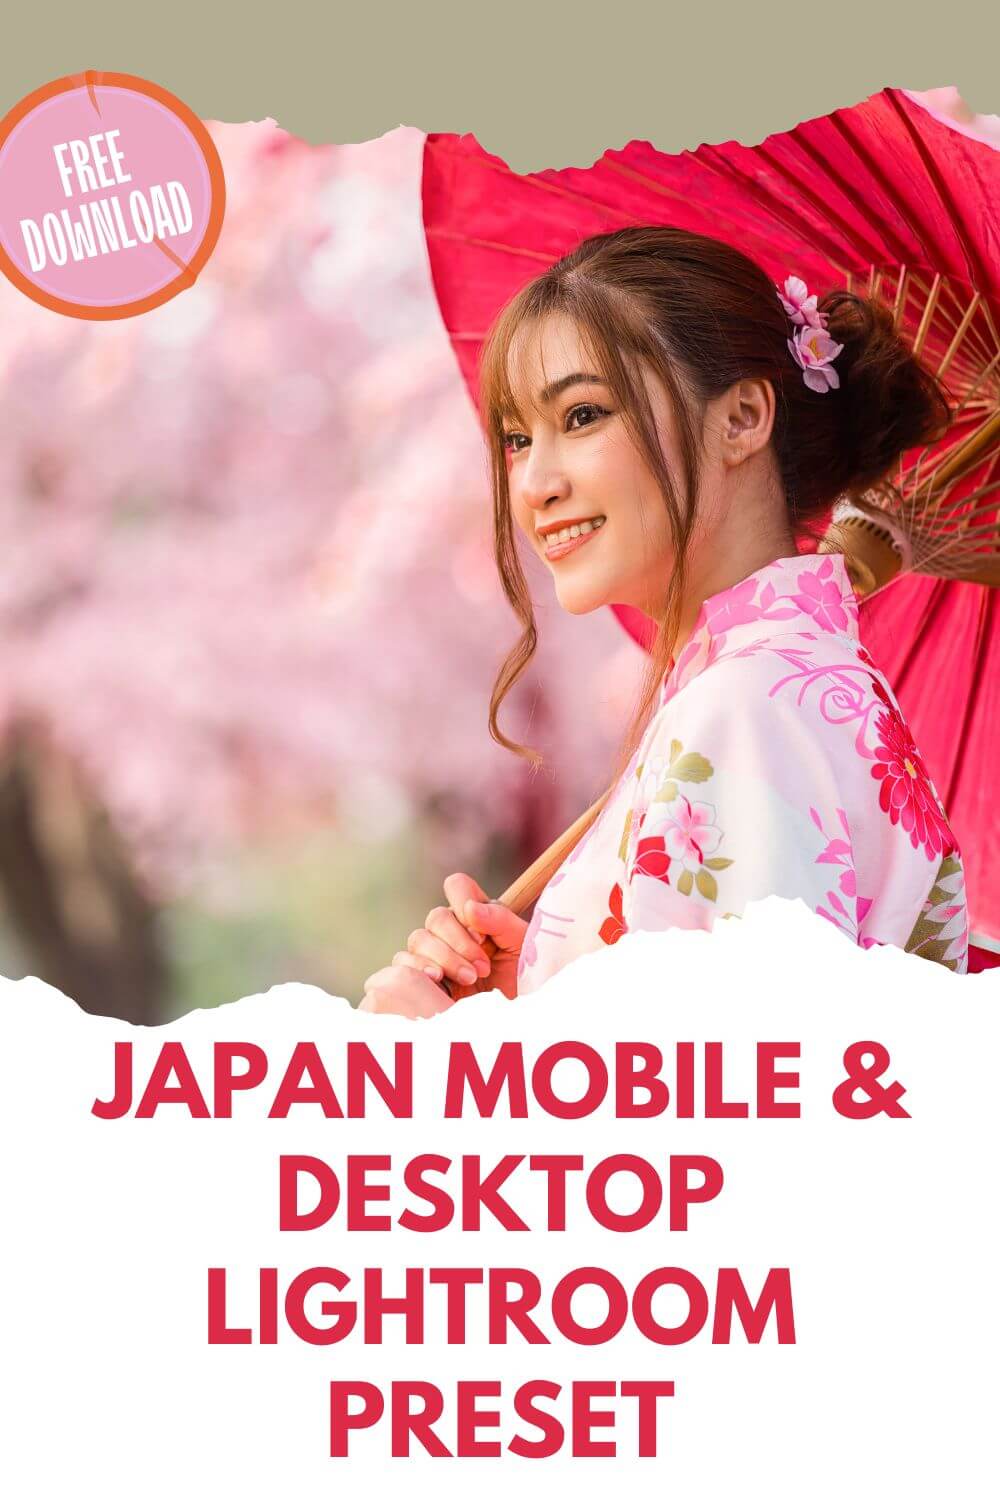 Japan Mobile & Desktop Lightroom Preset Pinterest